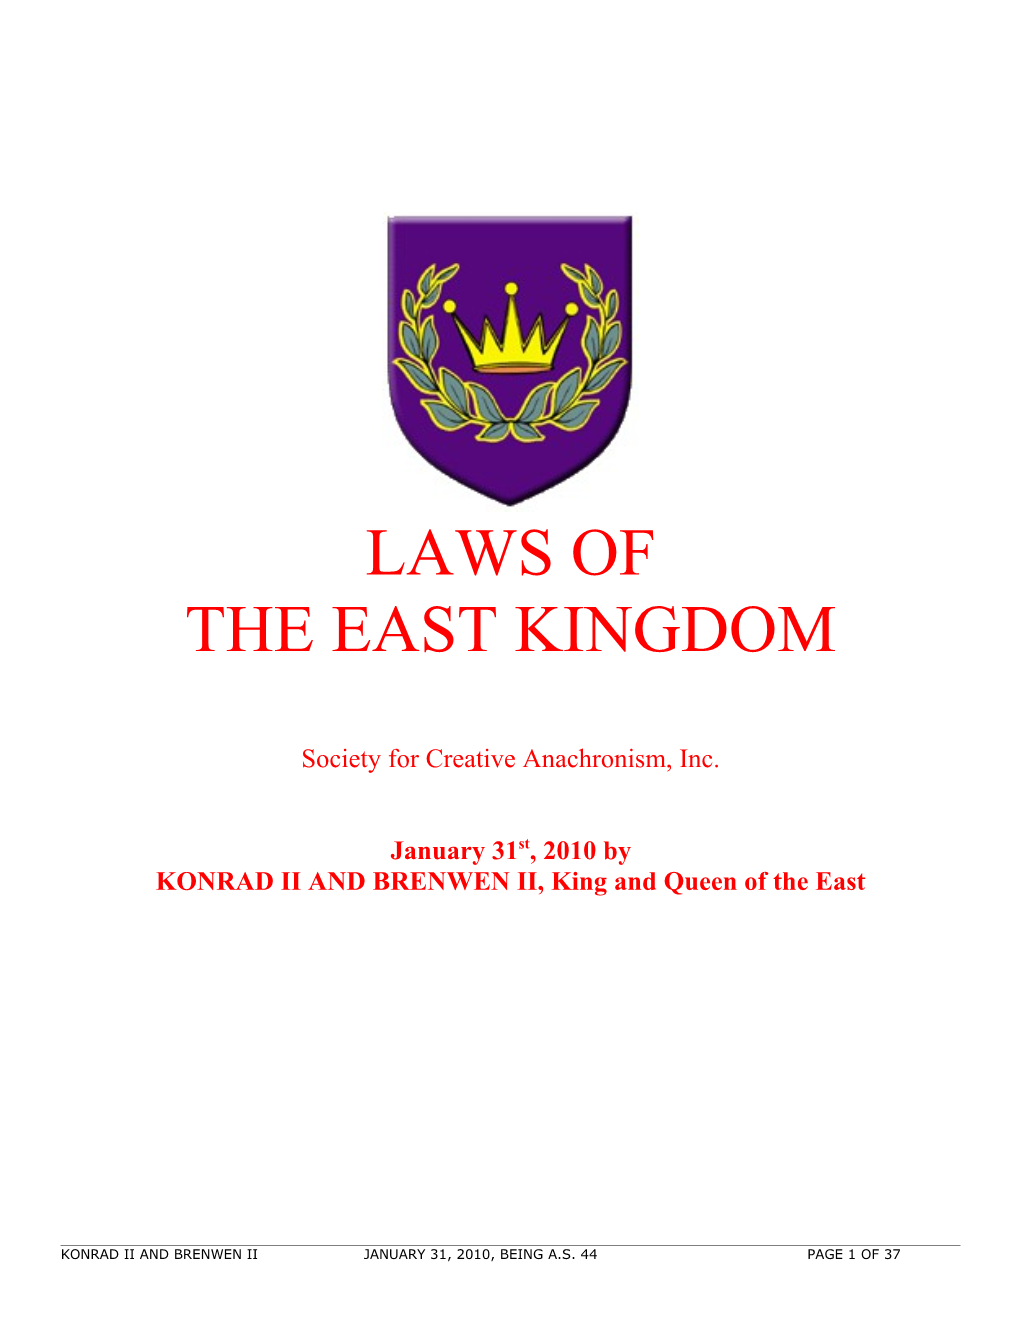 East Kingdom Law